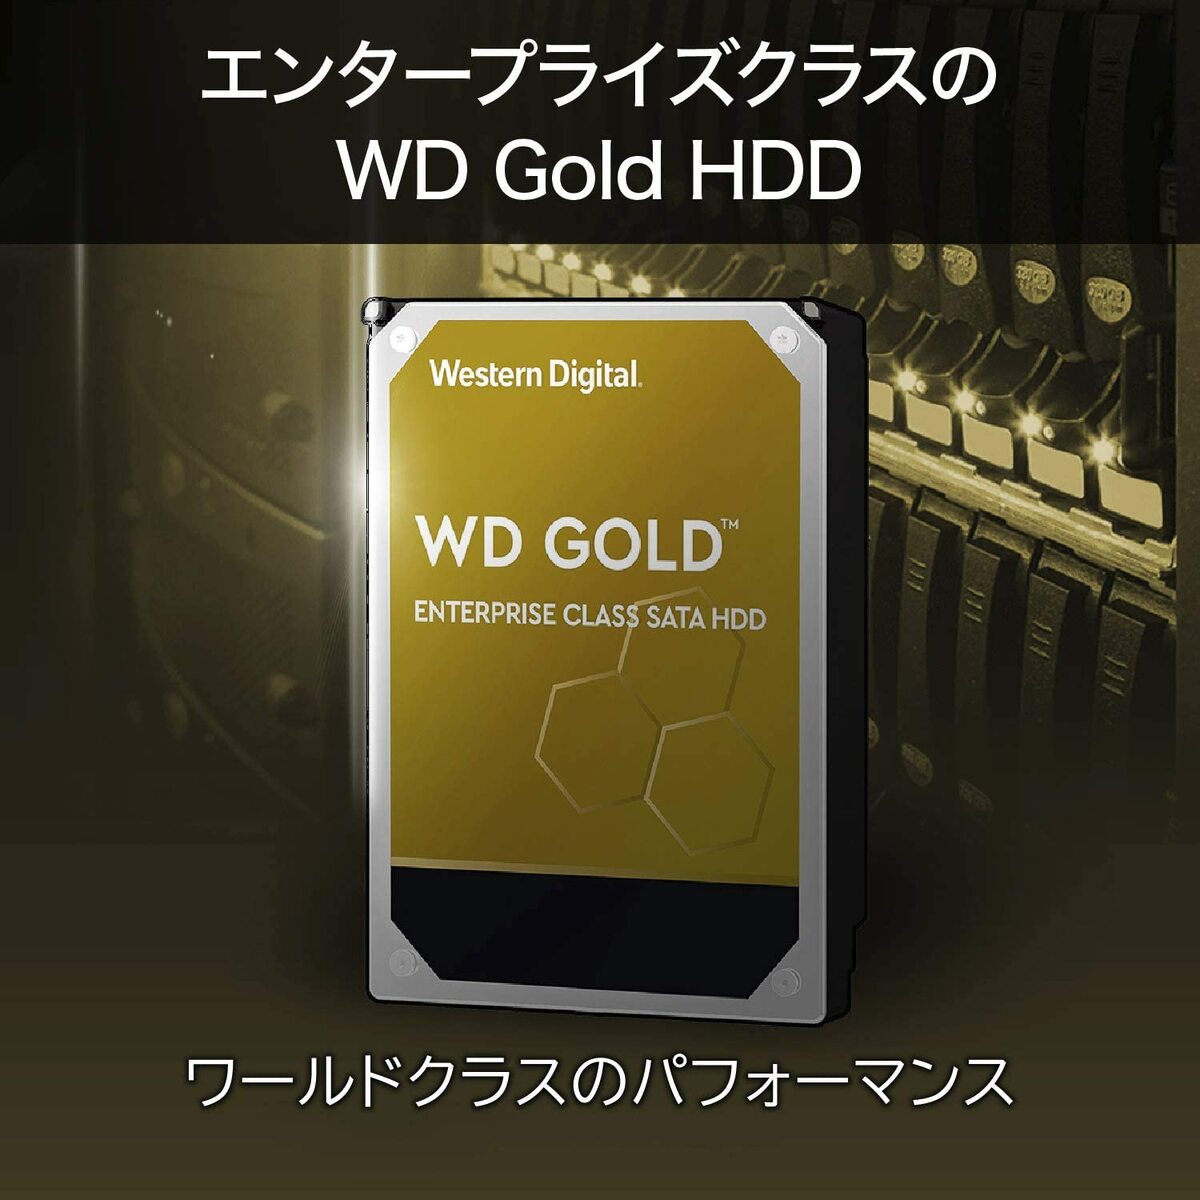 Western Digital ウエスタンデジタル ハードディスク メーカー保証5年